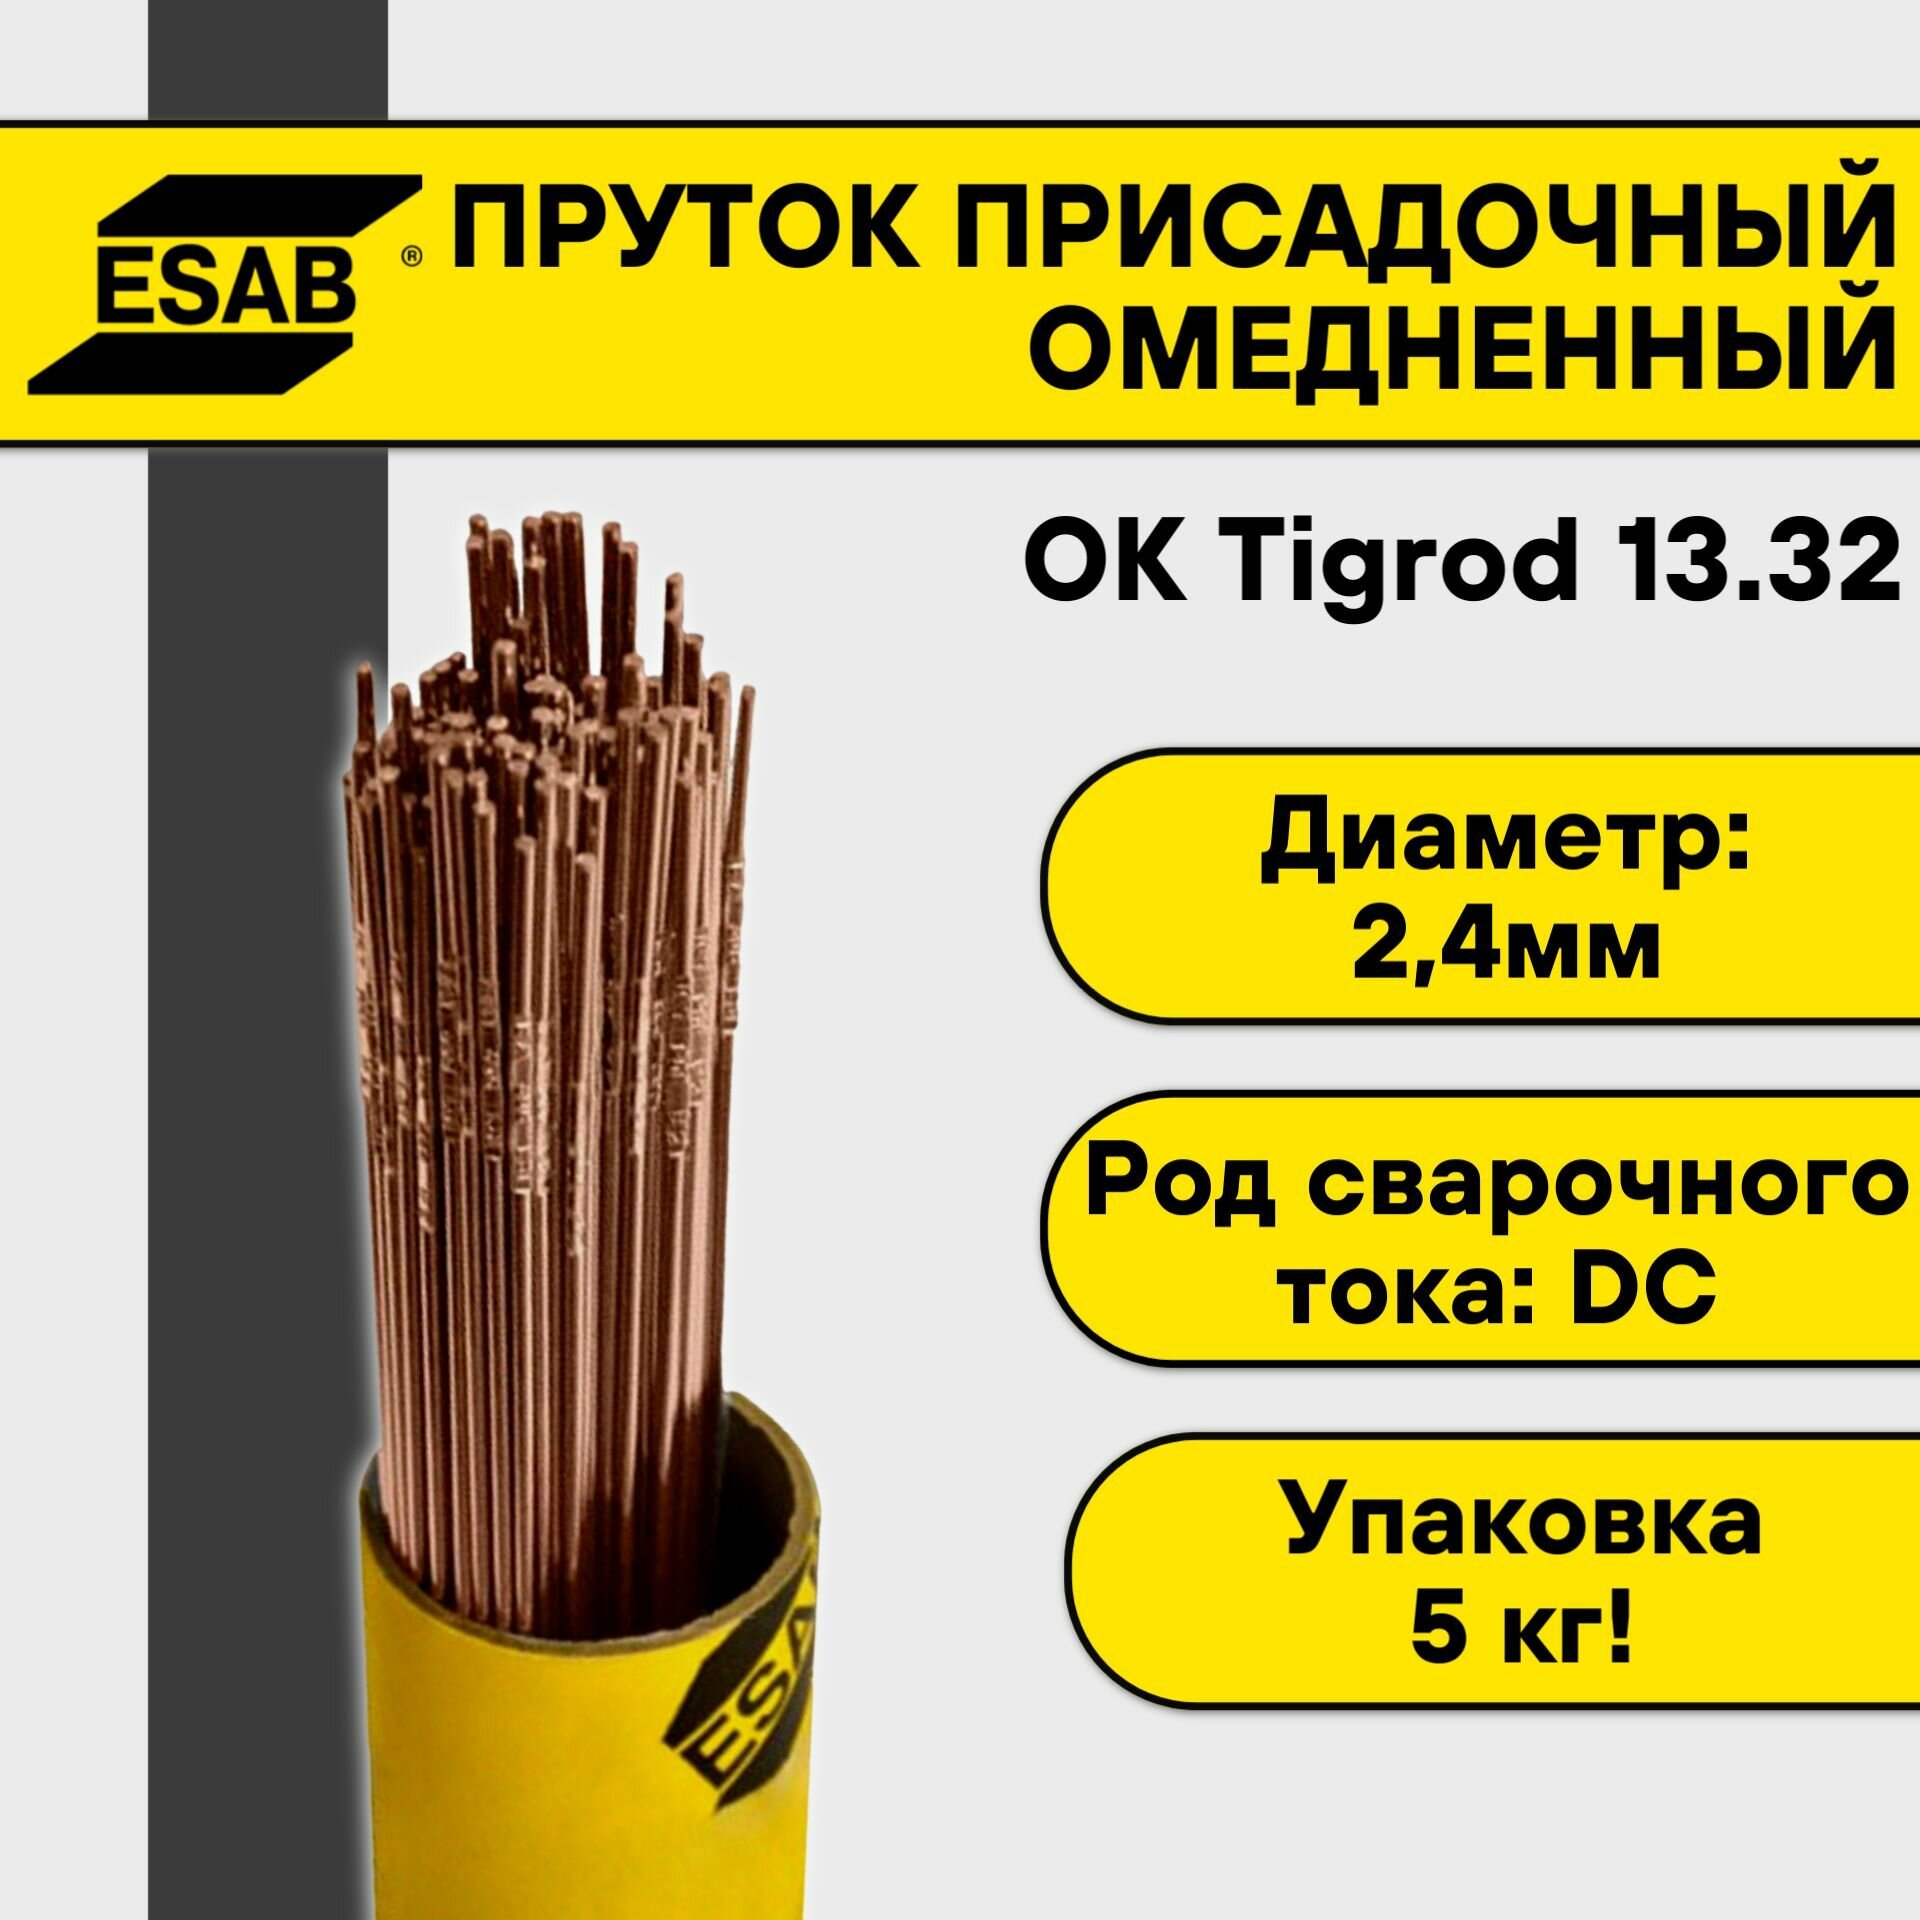 Пруток омедненный для TIG сварки Esab ОК Tigrod 13.32 ф 2,4 мм (5 кг)